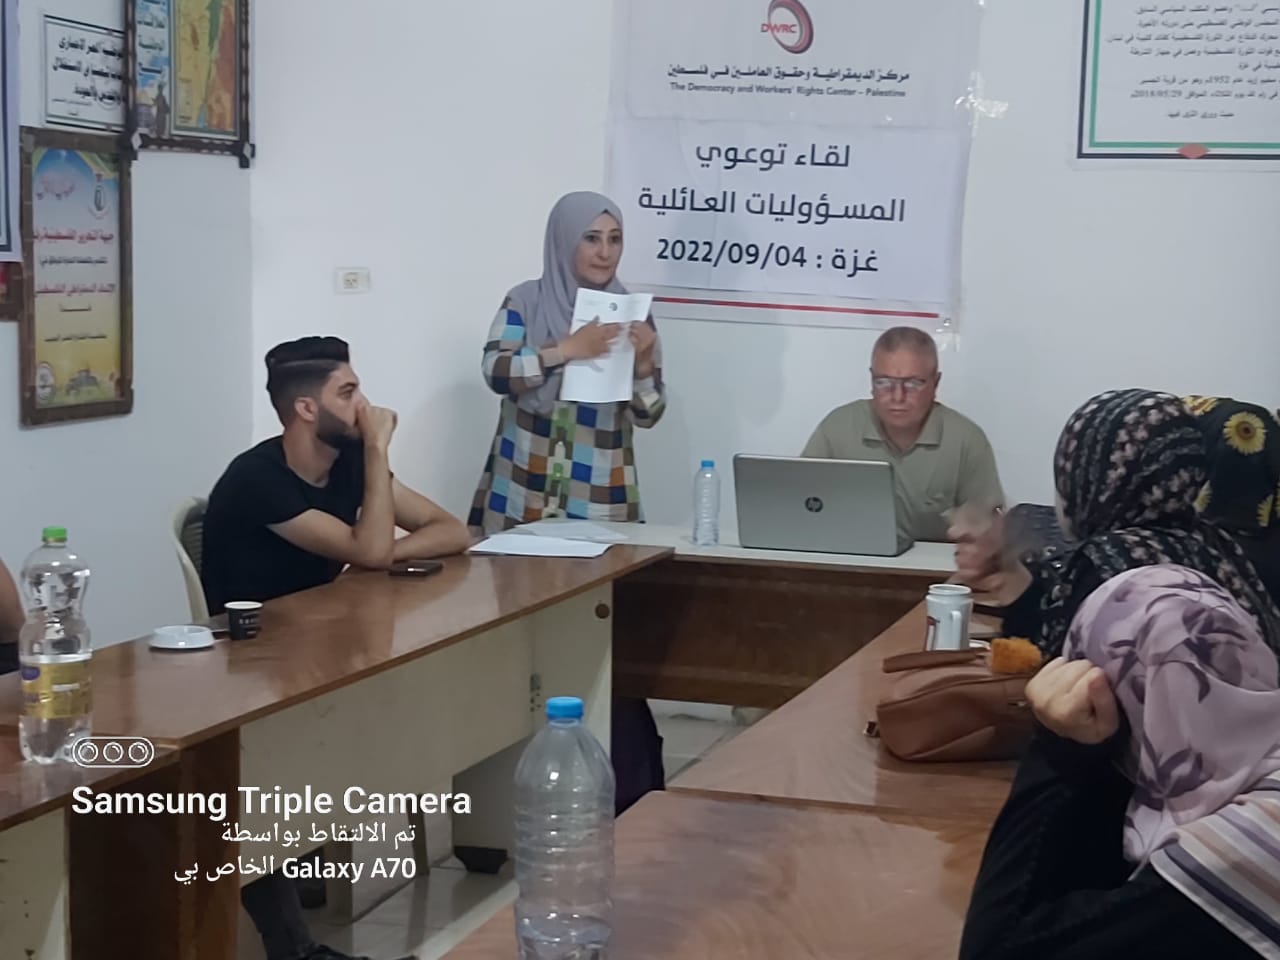 دائرة المرأه في الاتحاد العام لعمال فلسطين تنفذ مجموعة من اللقاءات وورش العمل الخاصة بالعاملين والعاملات